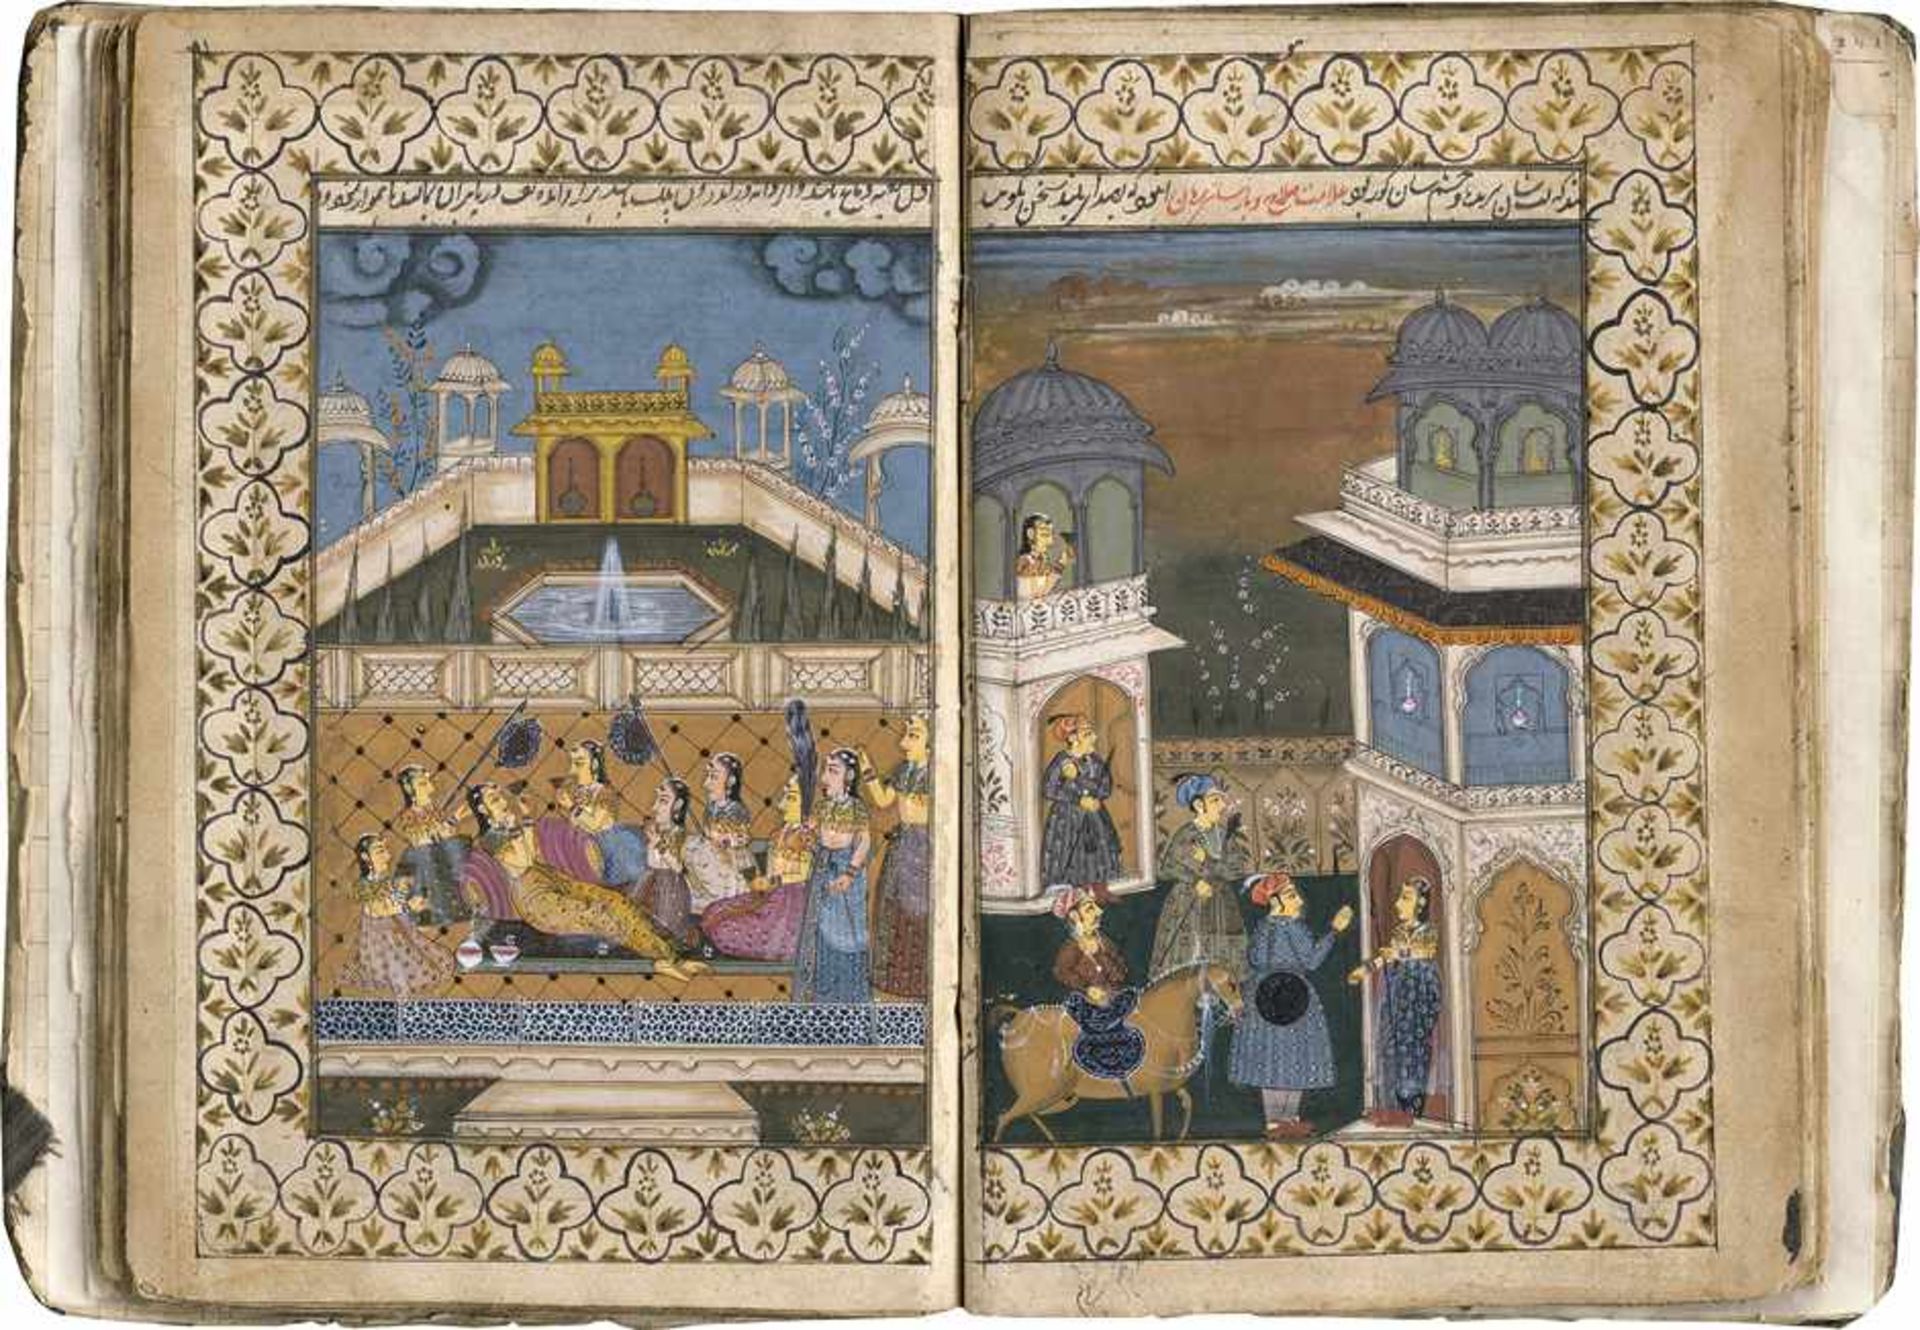 Firdousi, Abu l-Qasim: Album mit indo-persische Miniaturen. Firdousi, Abu l-Qasim - Album mit indo-